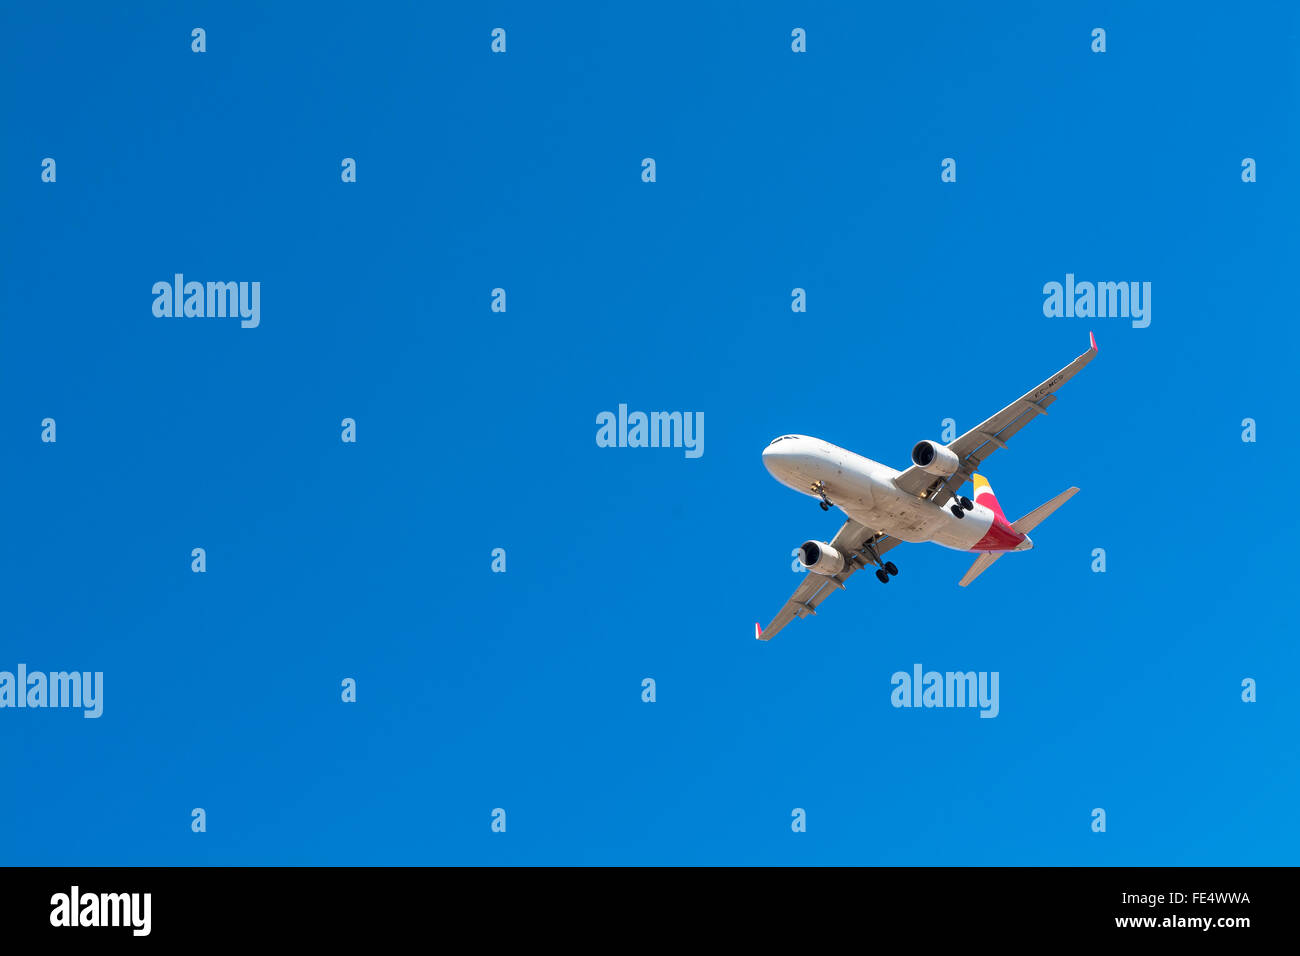 Basso angolo di vista aereo contro il cielo blu chiaro Foto Stock